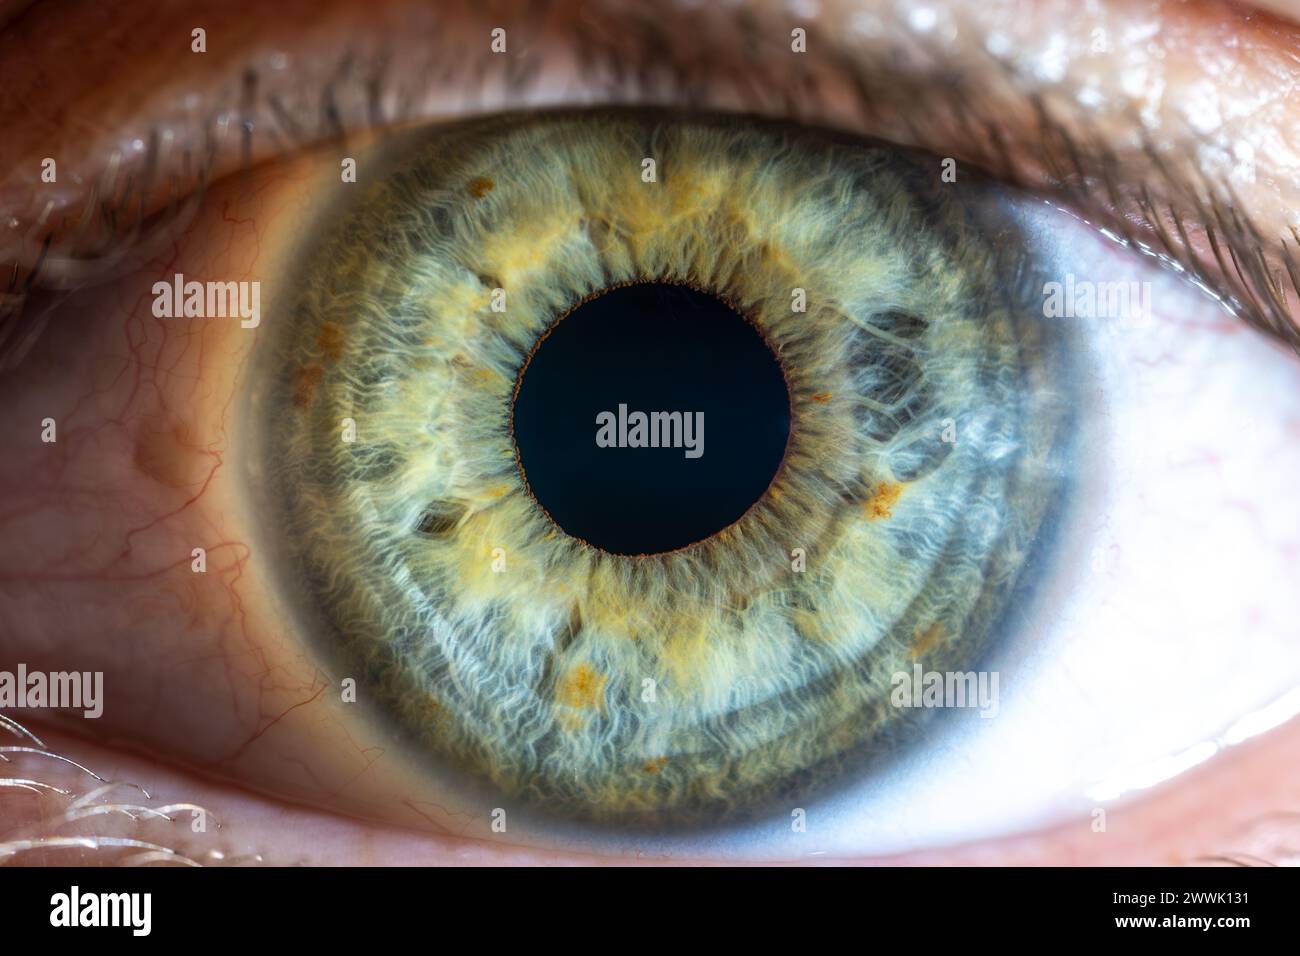 Beschreibung: Hochauflösendes grünblaues weibliches Auge mit gelben Pigmentflecken und weit geöffneter Pupille. Nahaufnahme. Strukturelle Anatomie. Menschliche Iris. Ma Stockfoto